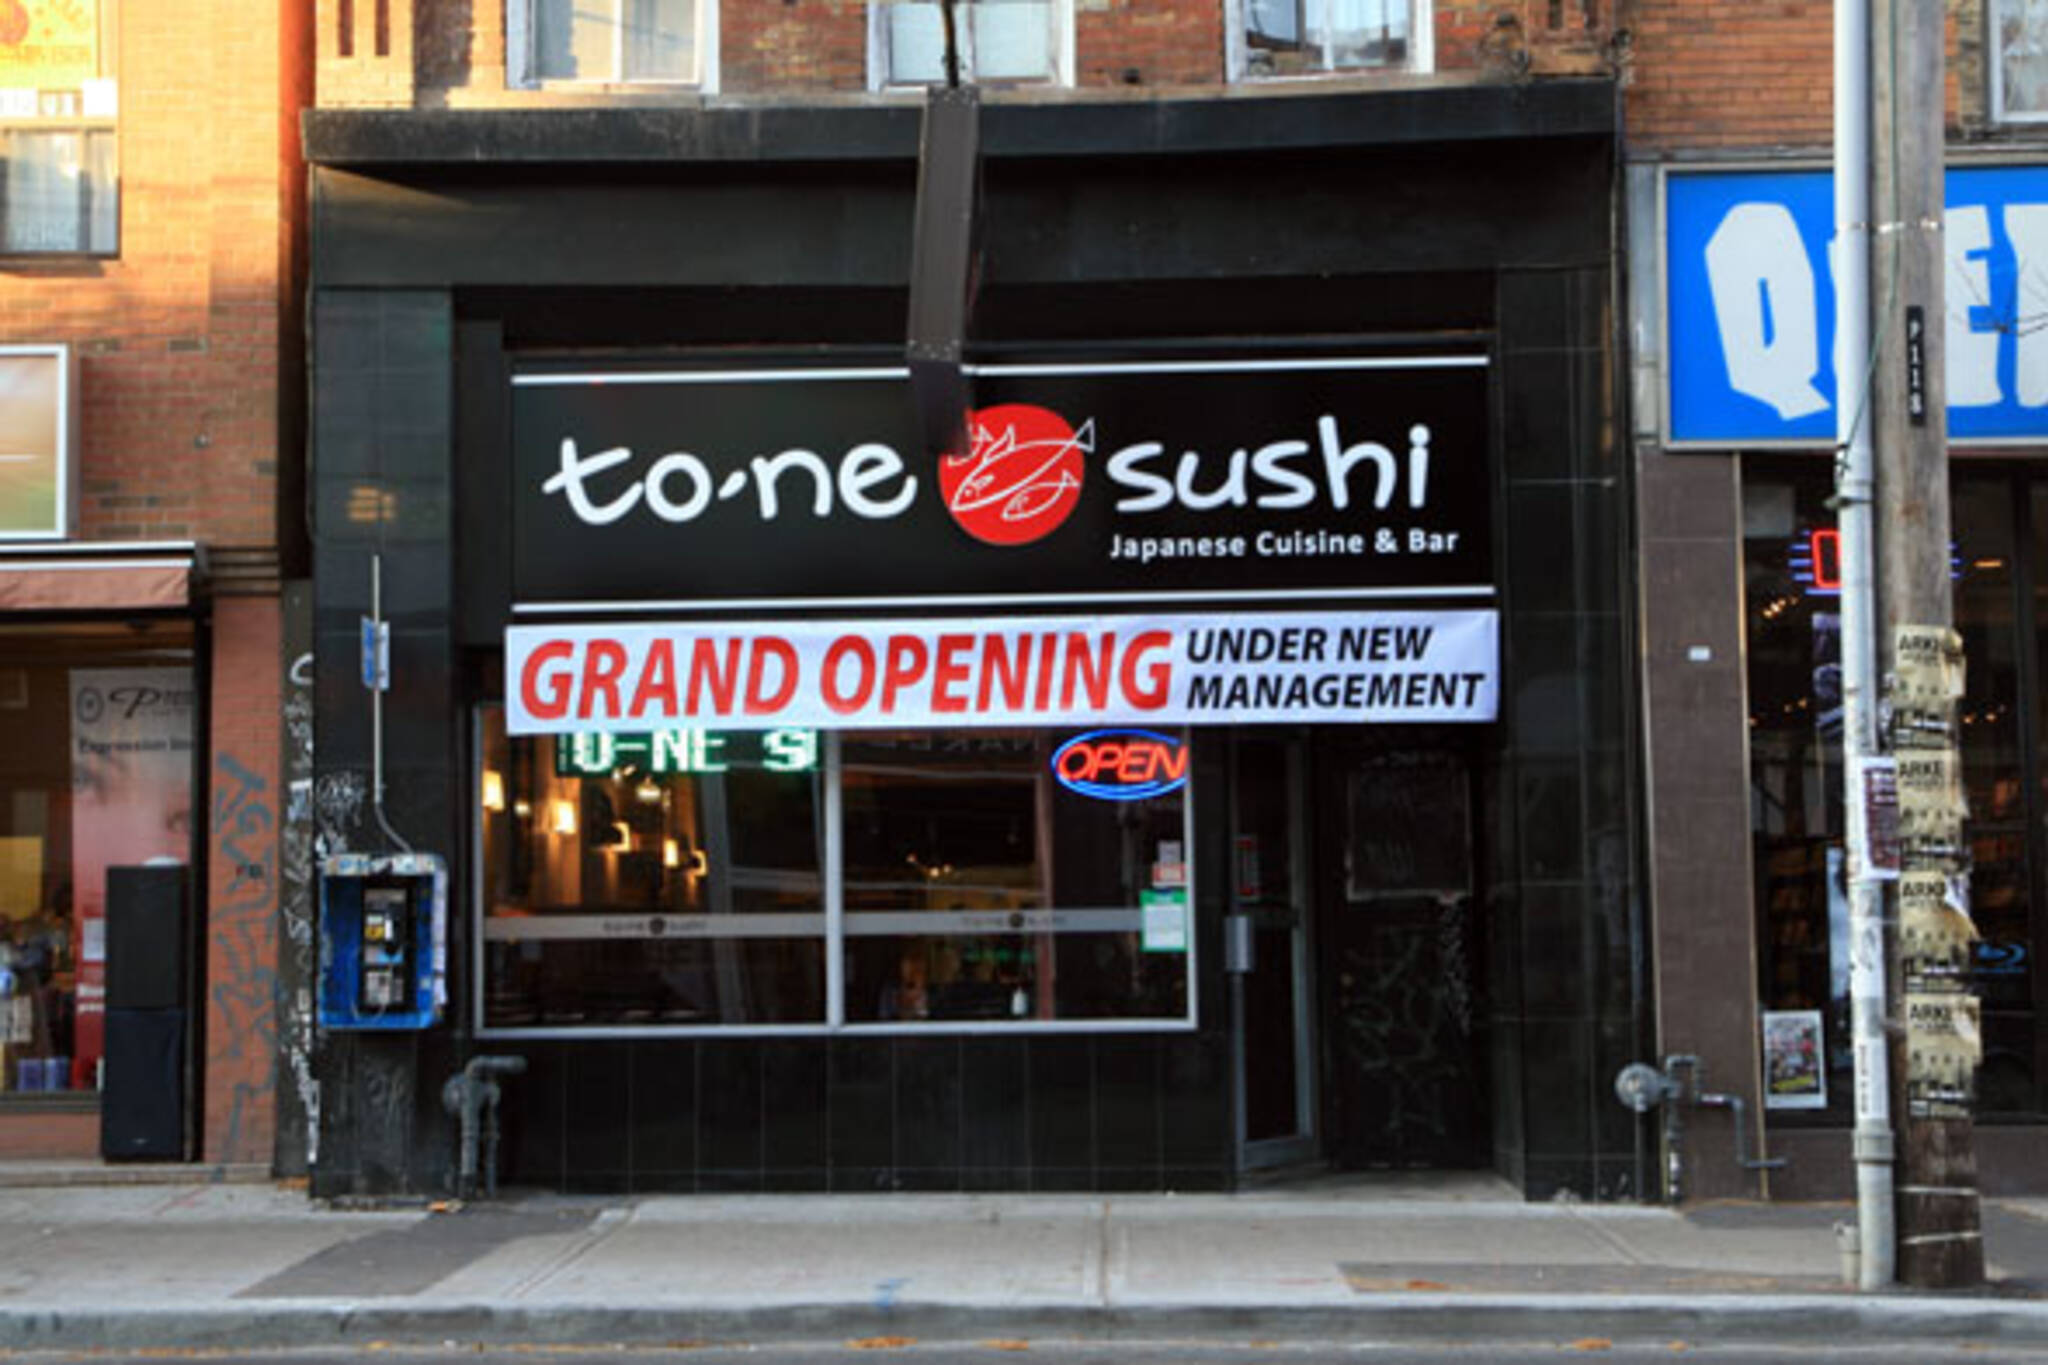 Tone Sushi